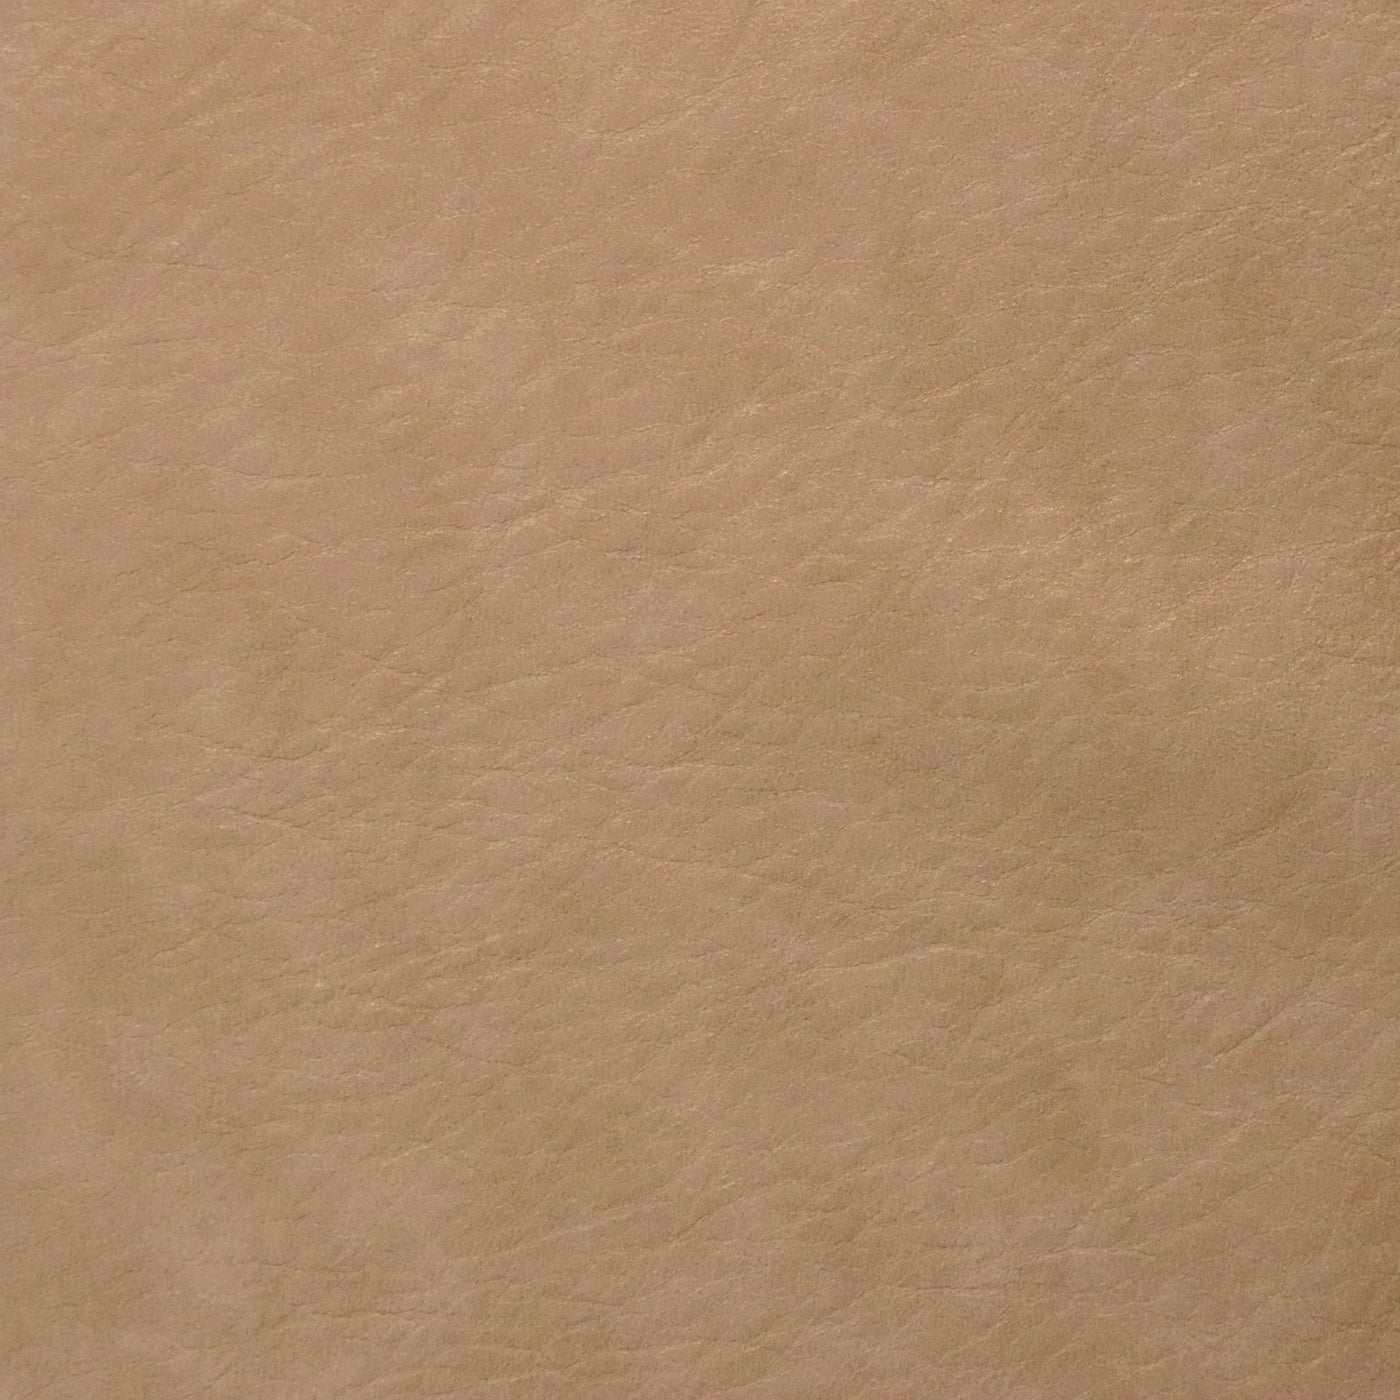 Corte empaquetado de 1/2 yarda: cuero sintético heredado beige